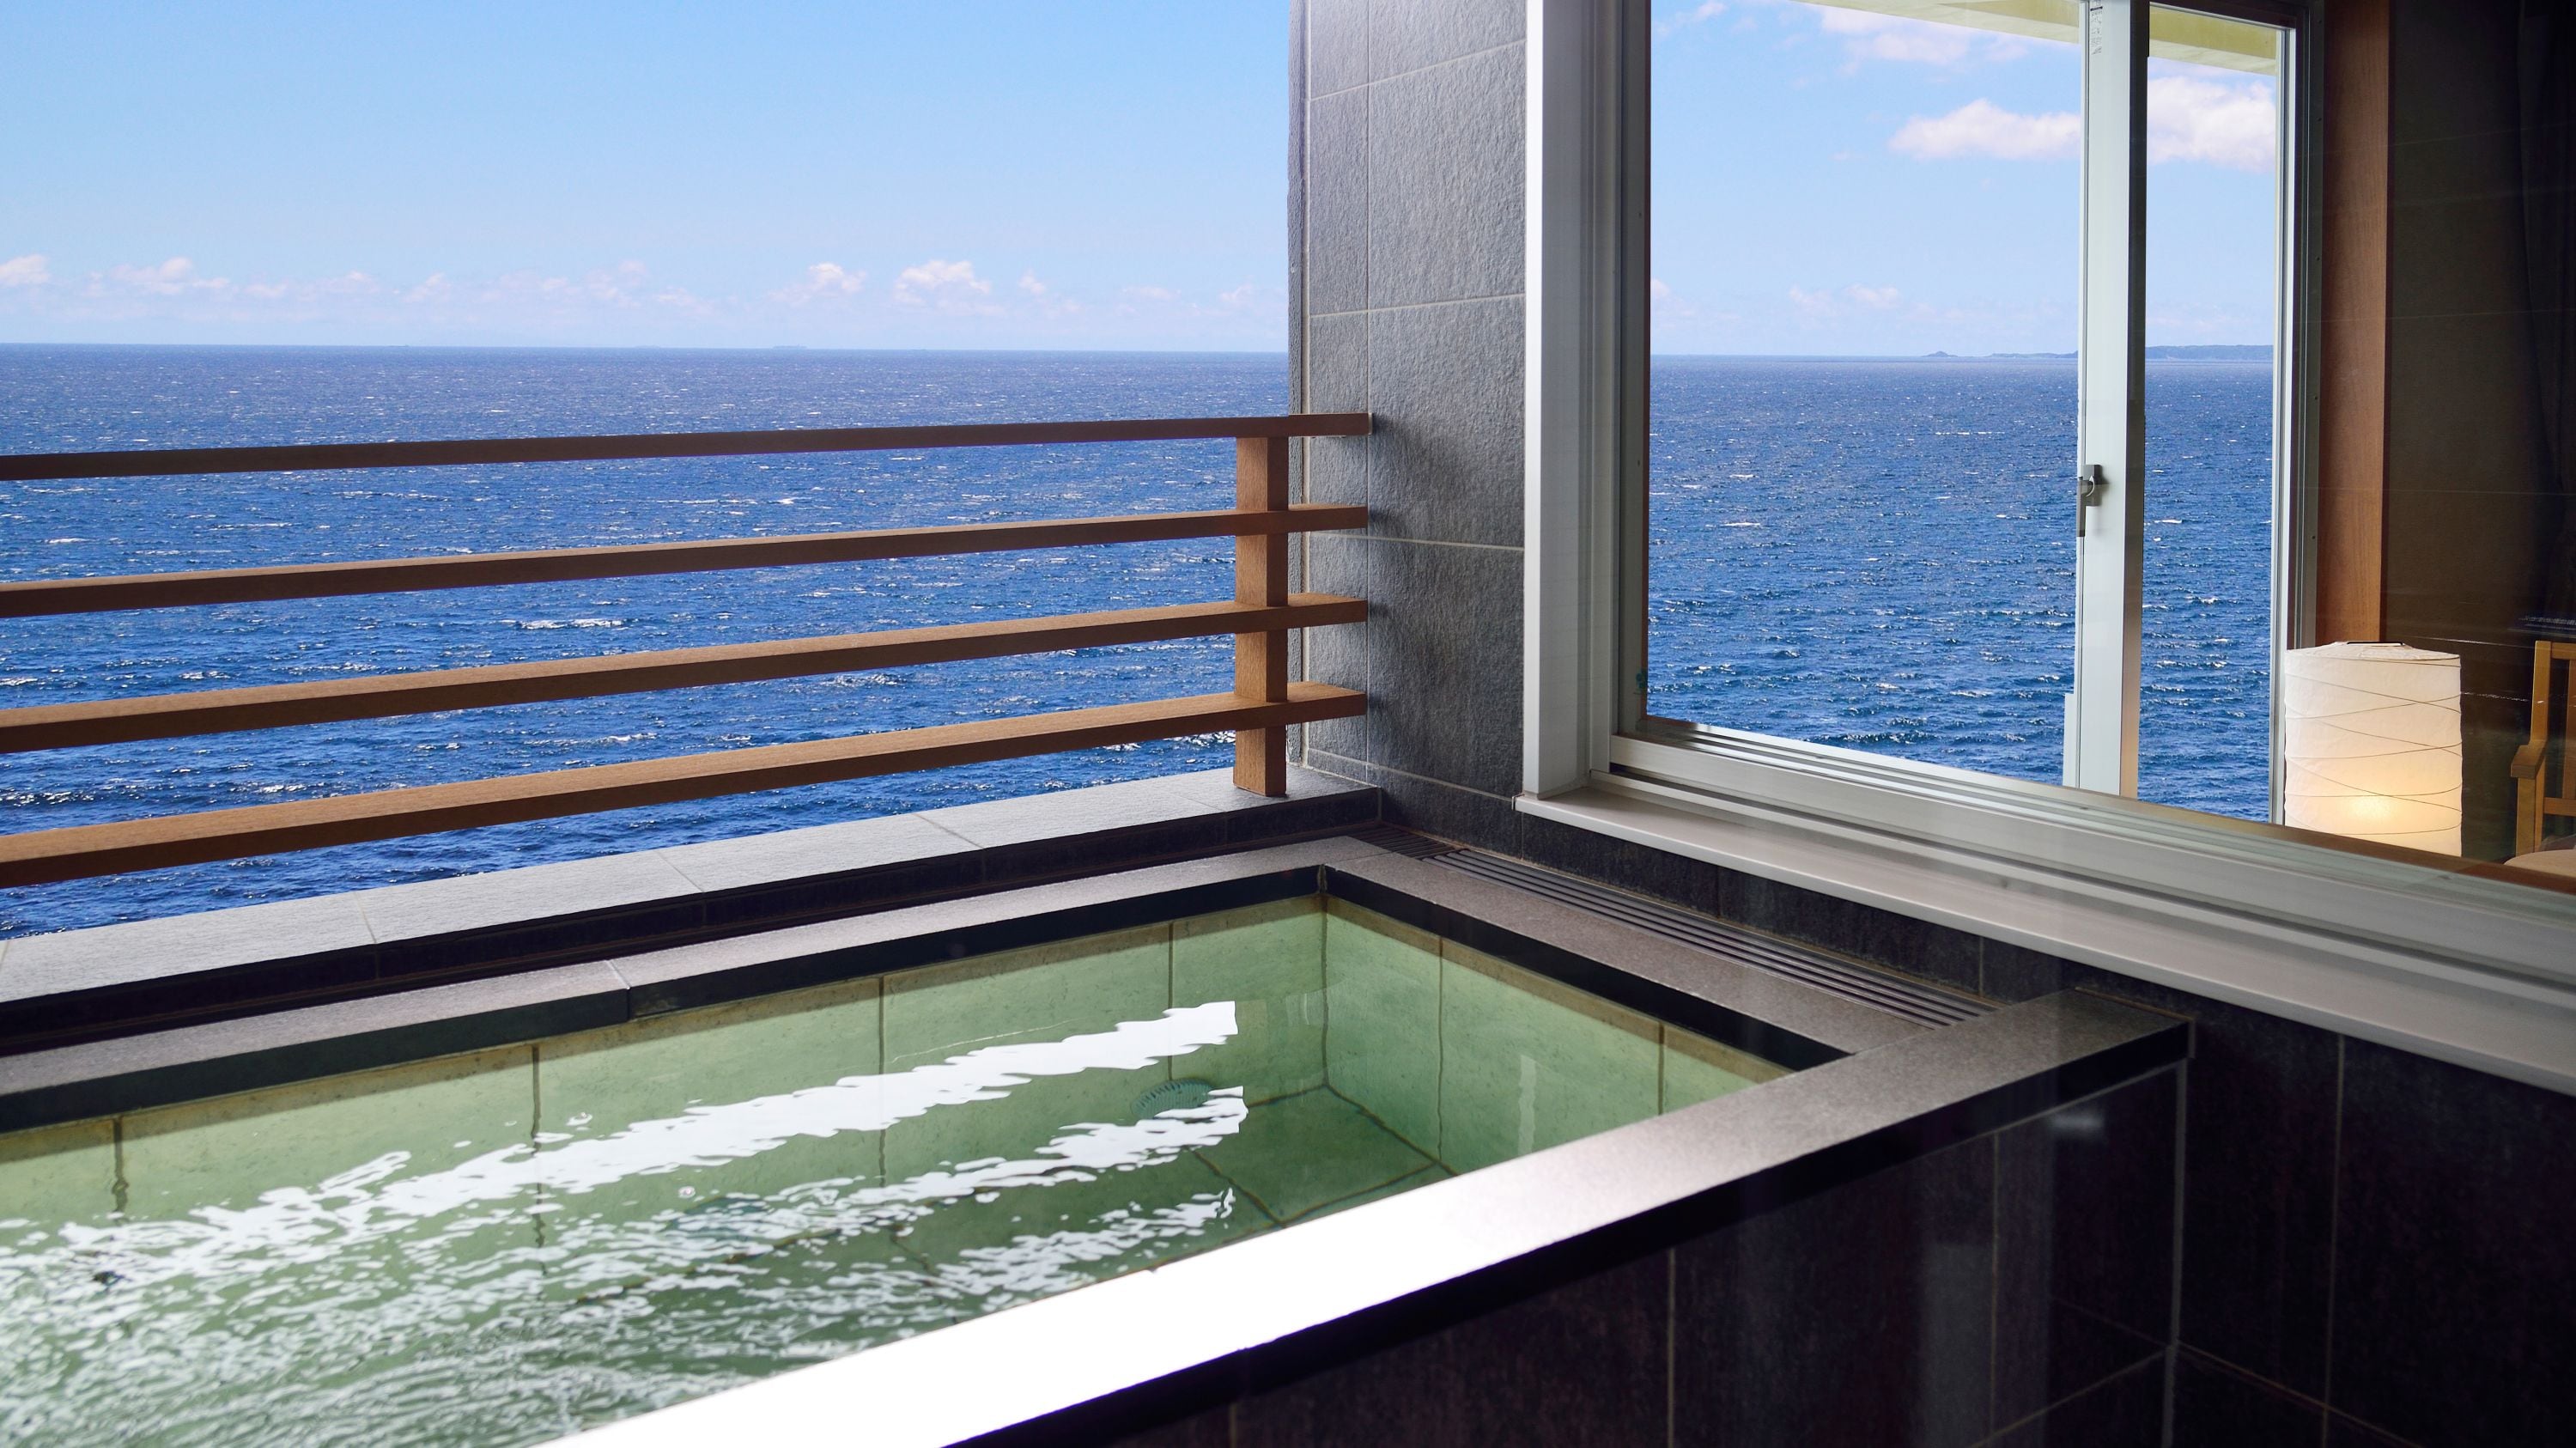 Kamar mandi terbuka di lantai premium dengan pemandangan laut yang indah